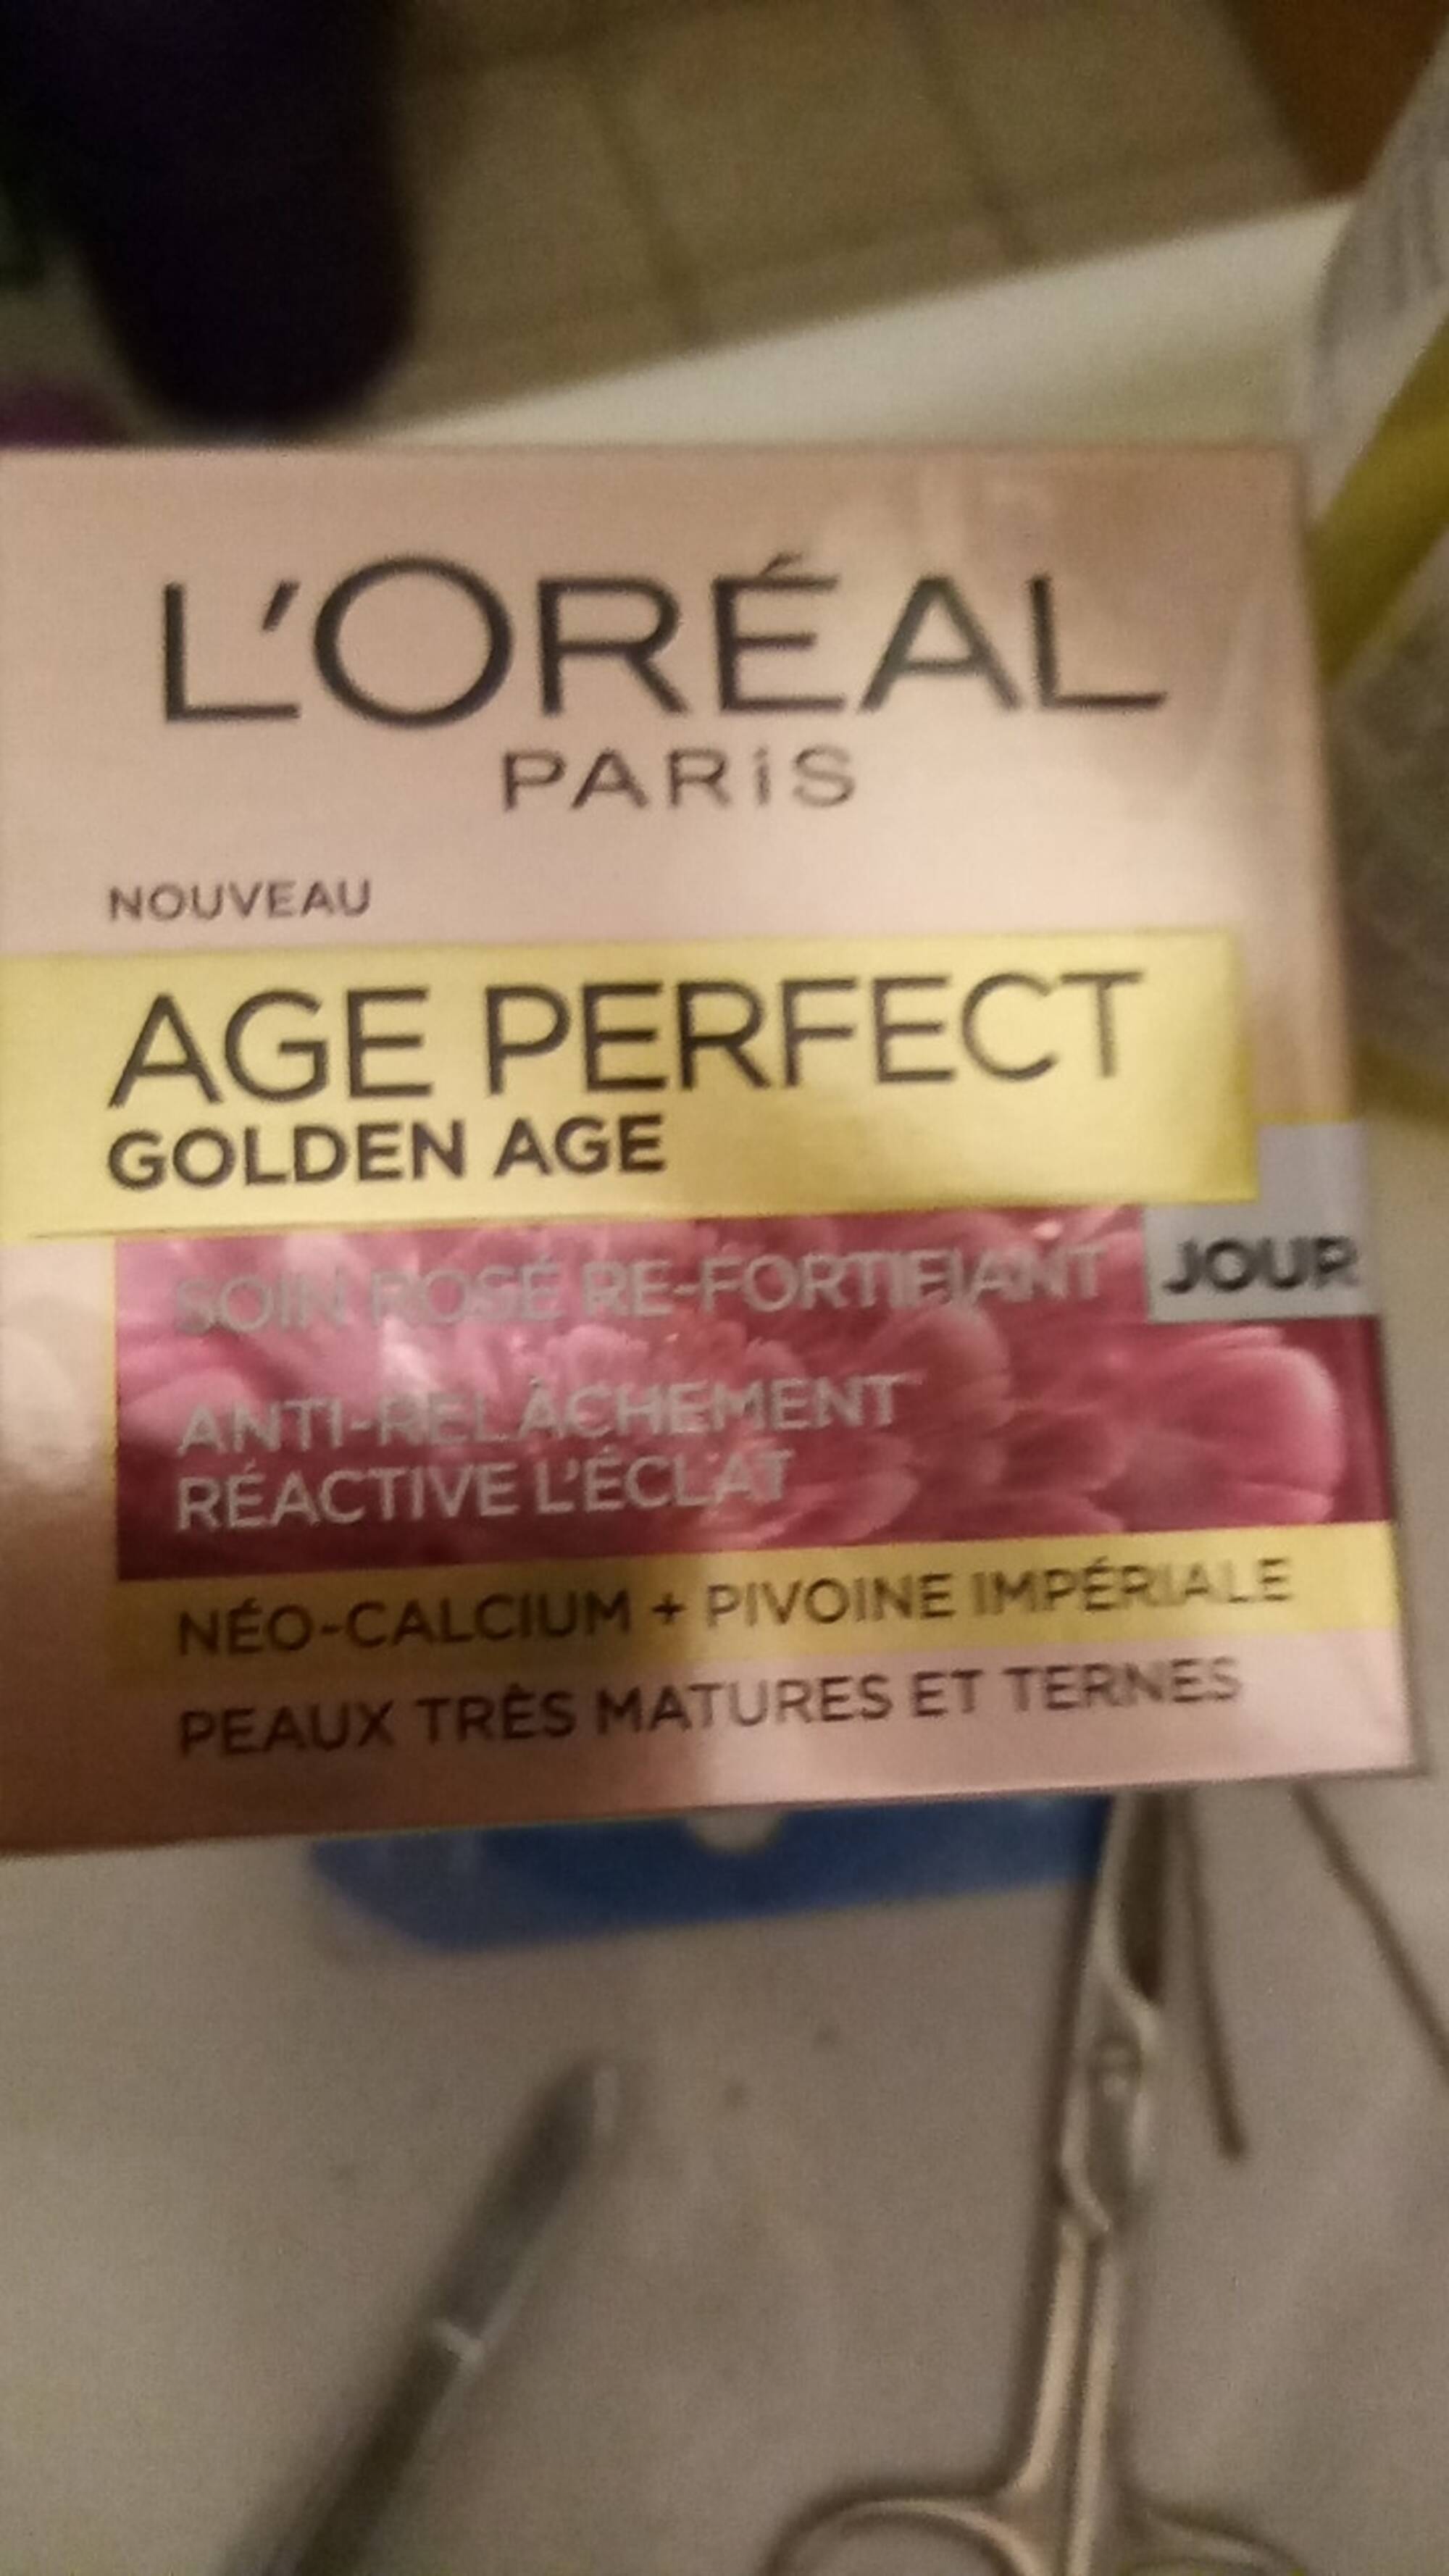 L'ORÉAL PARIS - Age perfect Golden age - Soin rose re-fortifiant